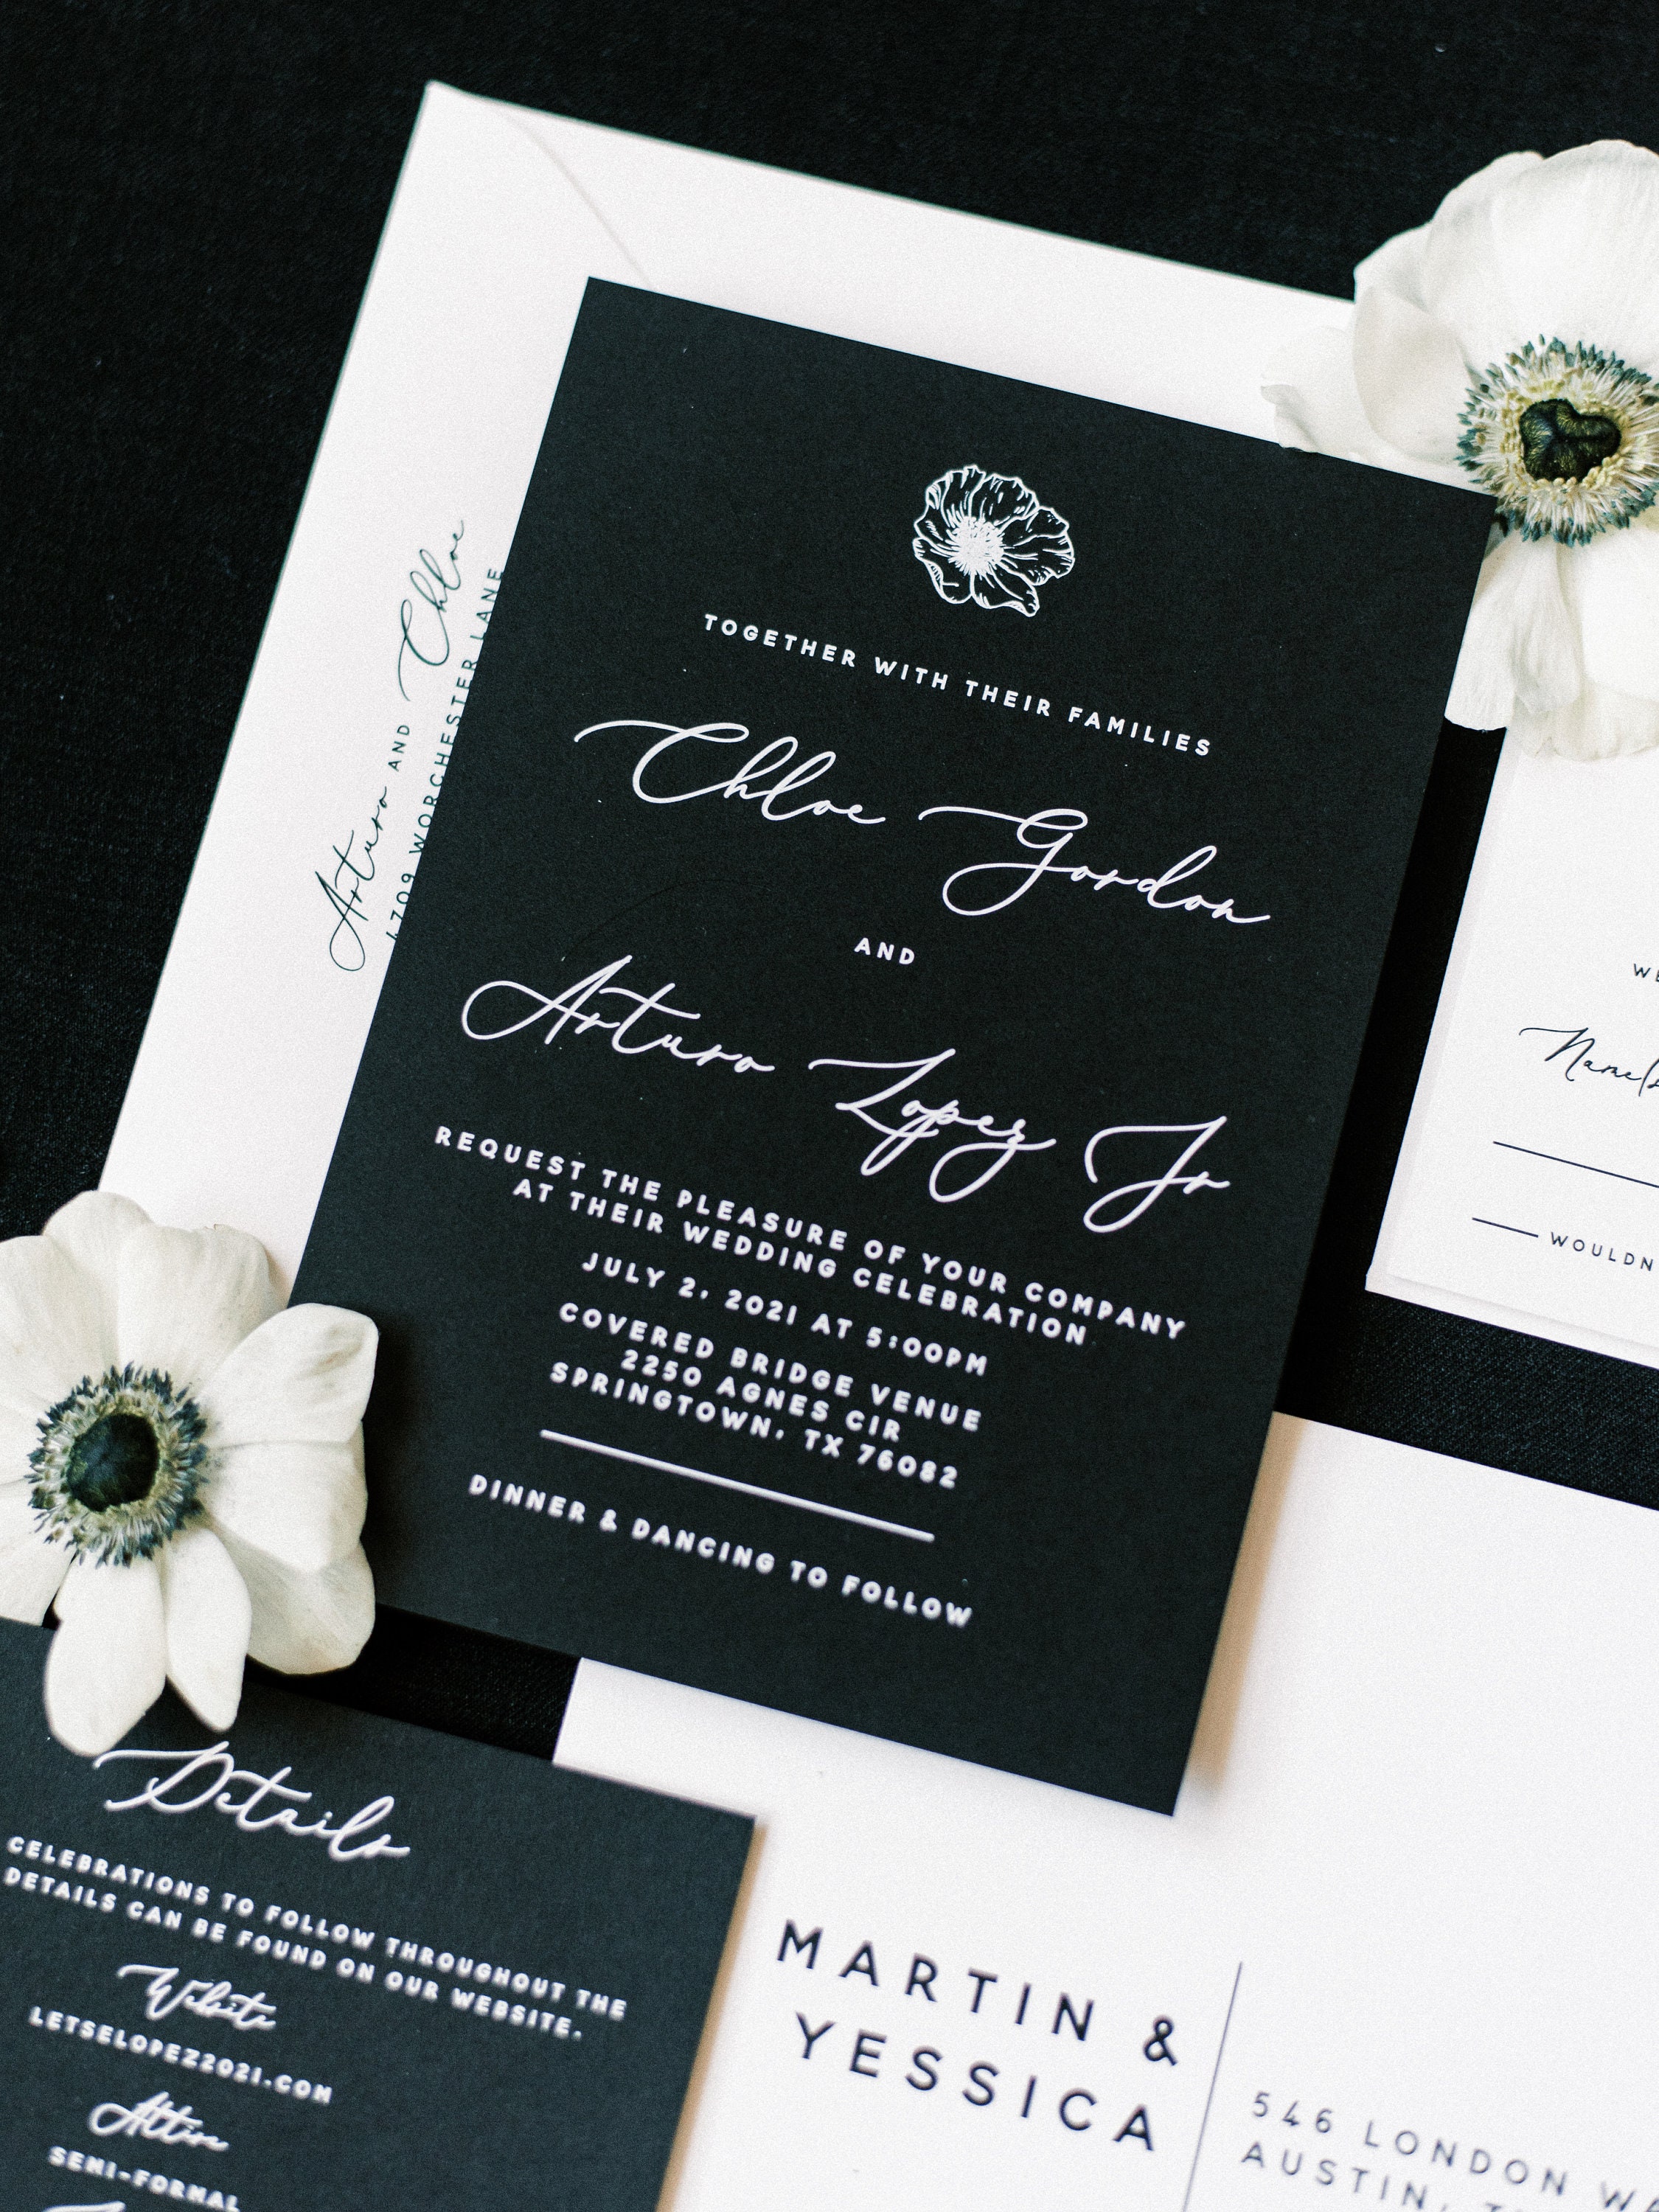 Personalised Luxury Wedding Invitation SETSimple Hearts Black & White 